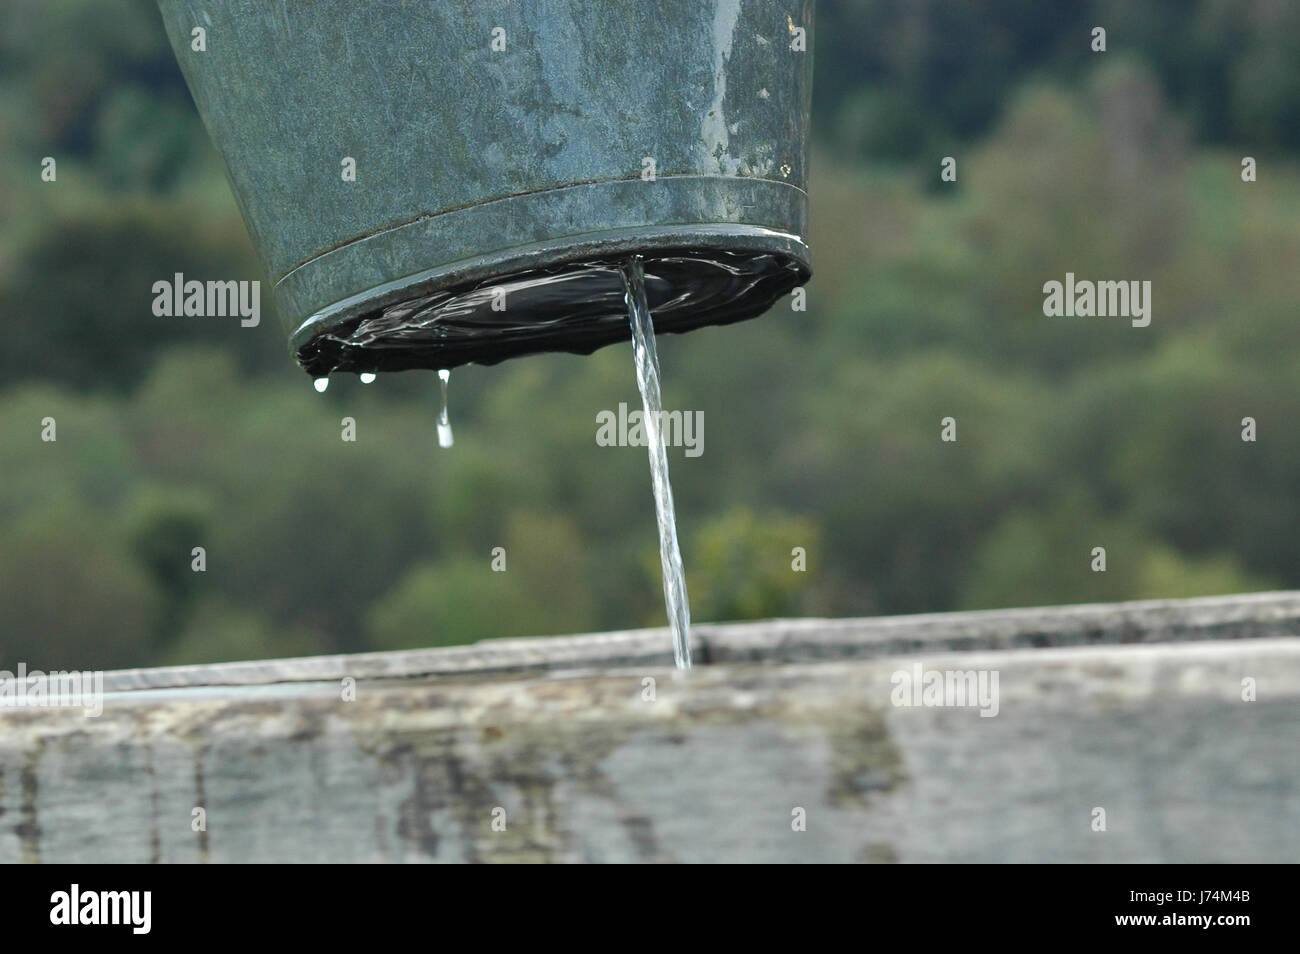 Eimer, Wasser, Verlust, Brunnen, Loch, Leck, Wasser, Flüssigkeit,  Flüssigkeit, Blecheimer jet Stockfotografie - Alamy